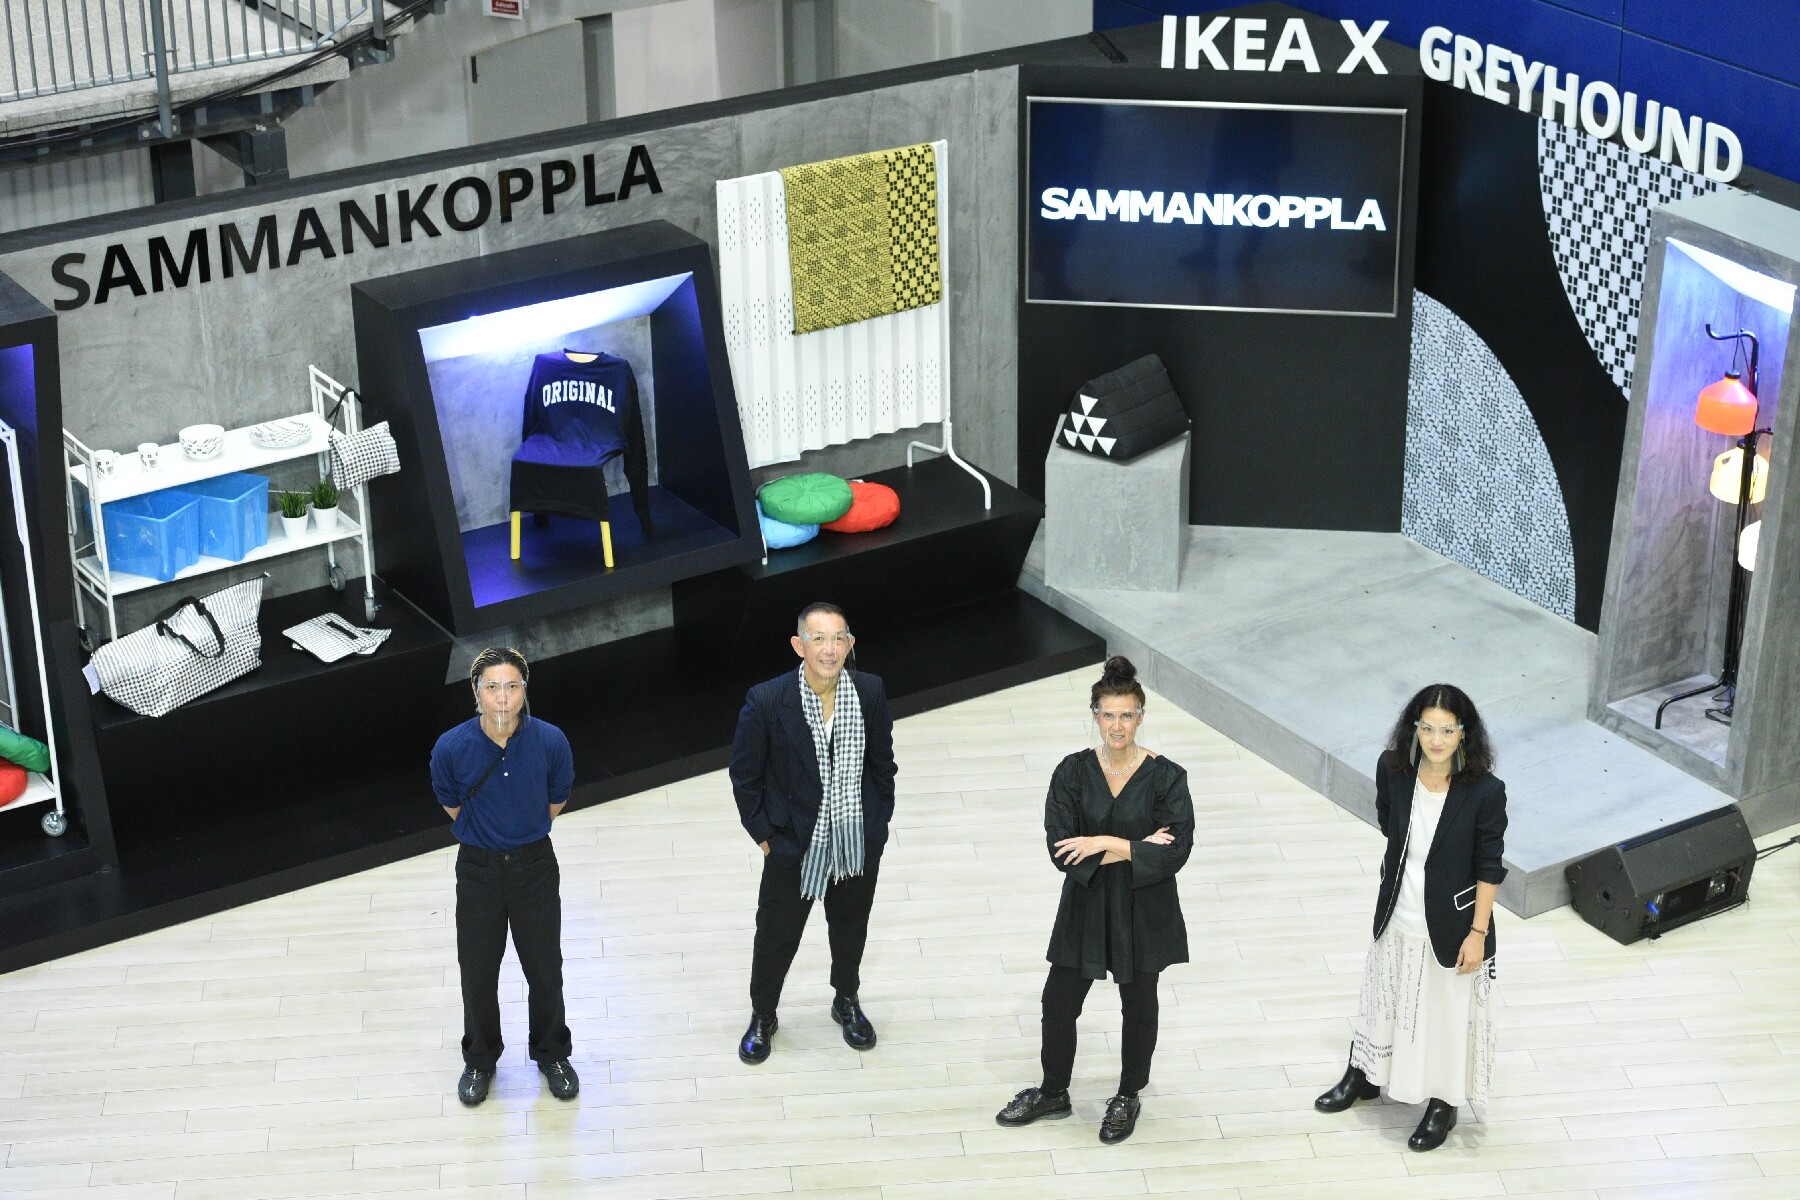 อิเกีย x เกรฮาวด์  เปิดตัวคอลเล็คชั่นพิเศษ “SAMMANKOPPLA/ซัมมันคอปล่า”  จากกรุงเทพฯ สู่ทั่วโลก